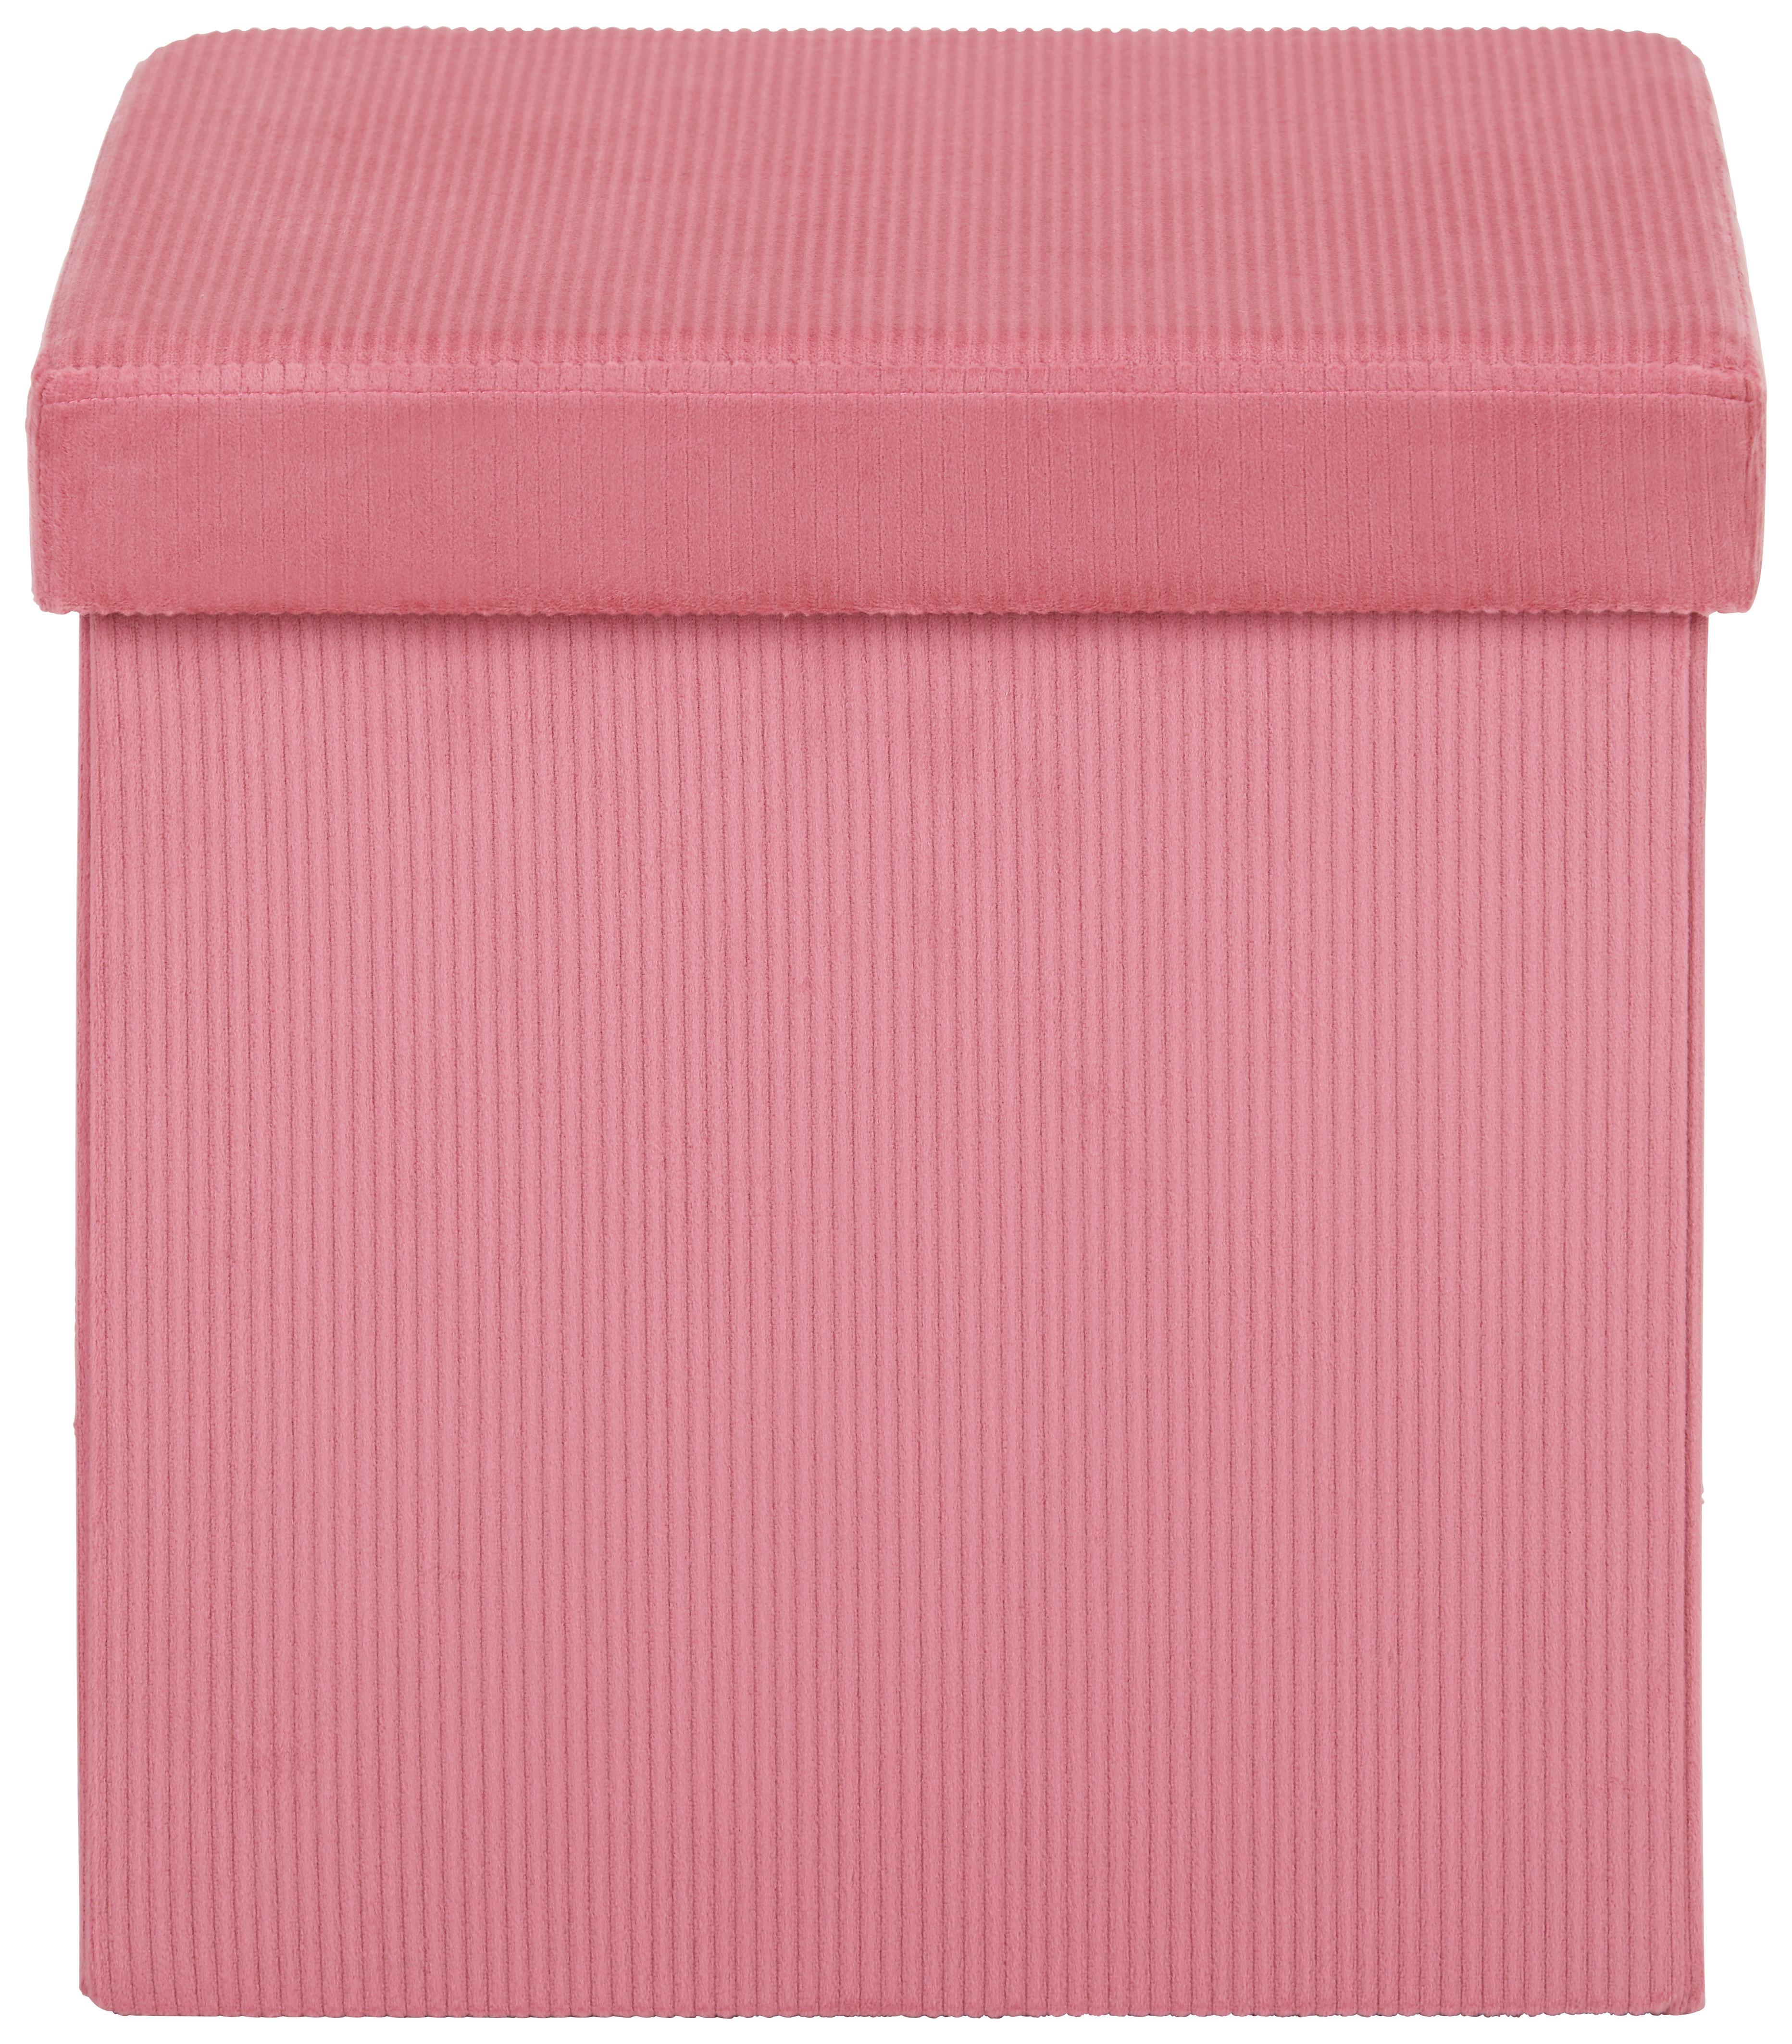 Zaboj Za Sedenje Cord -Sb- - pastelno roza, tekstil (38/38/38cm) - Modern Living